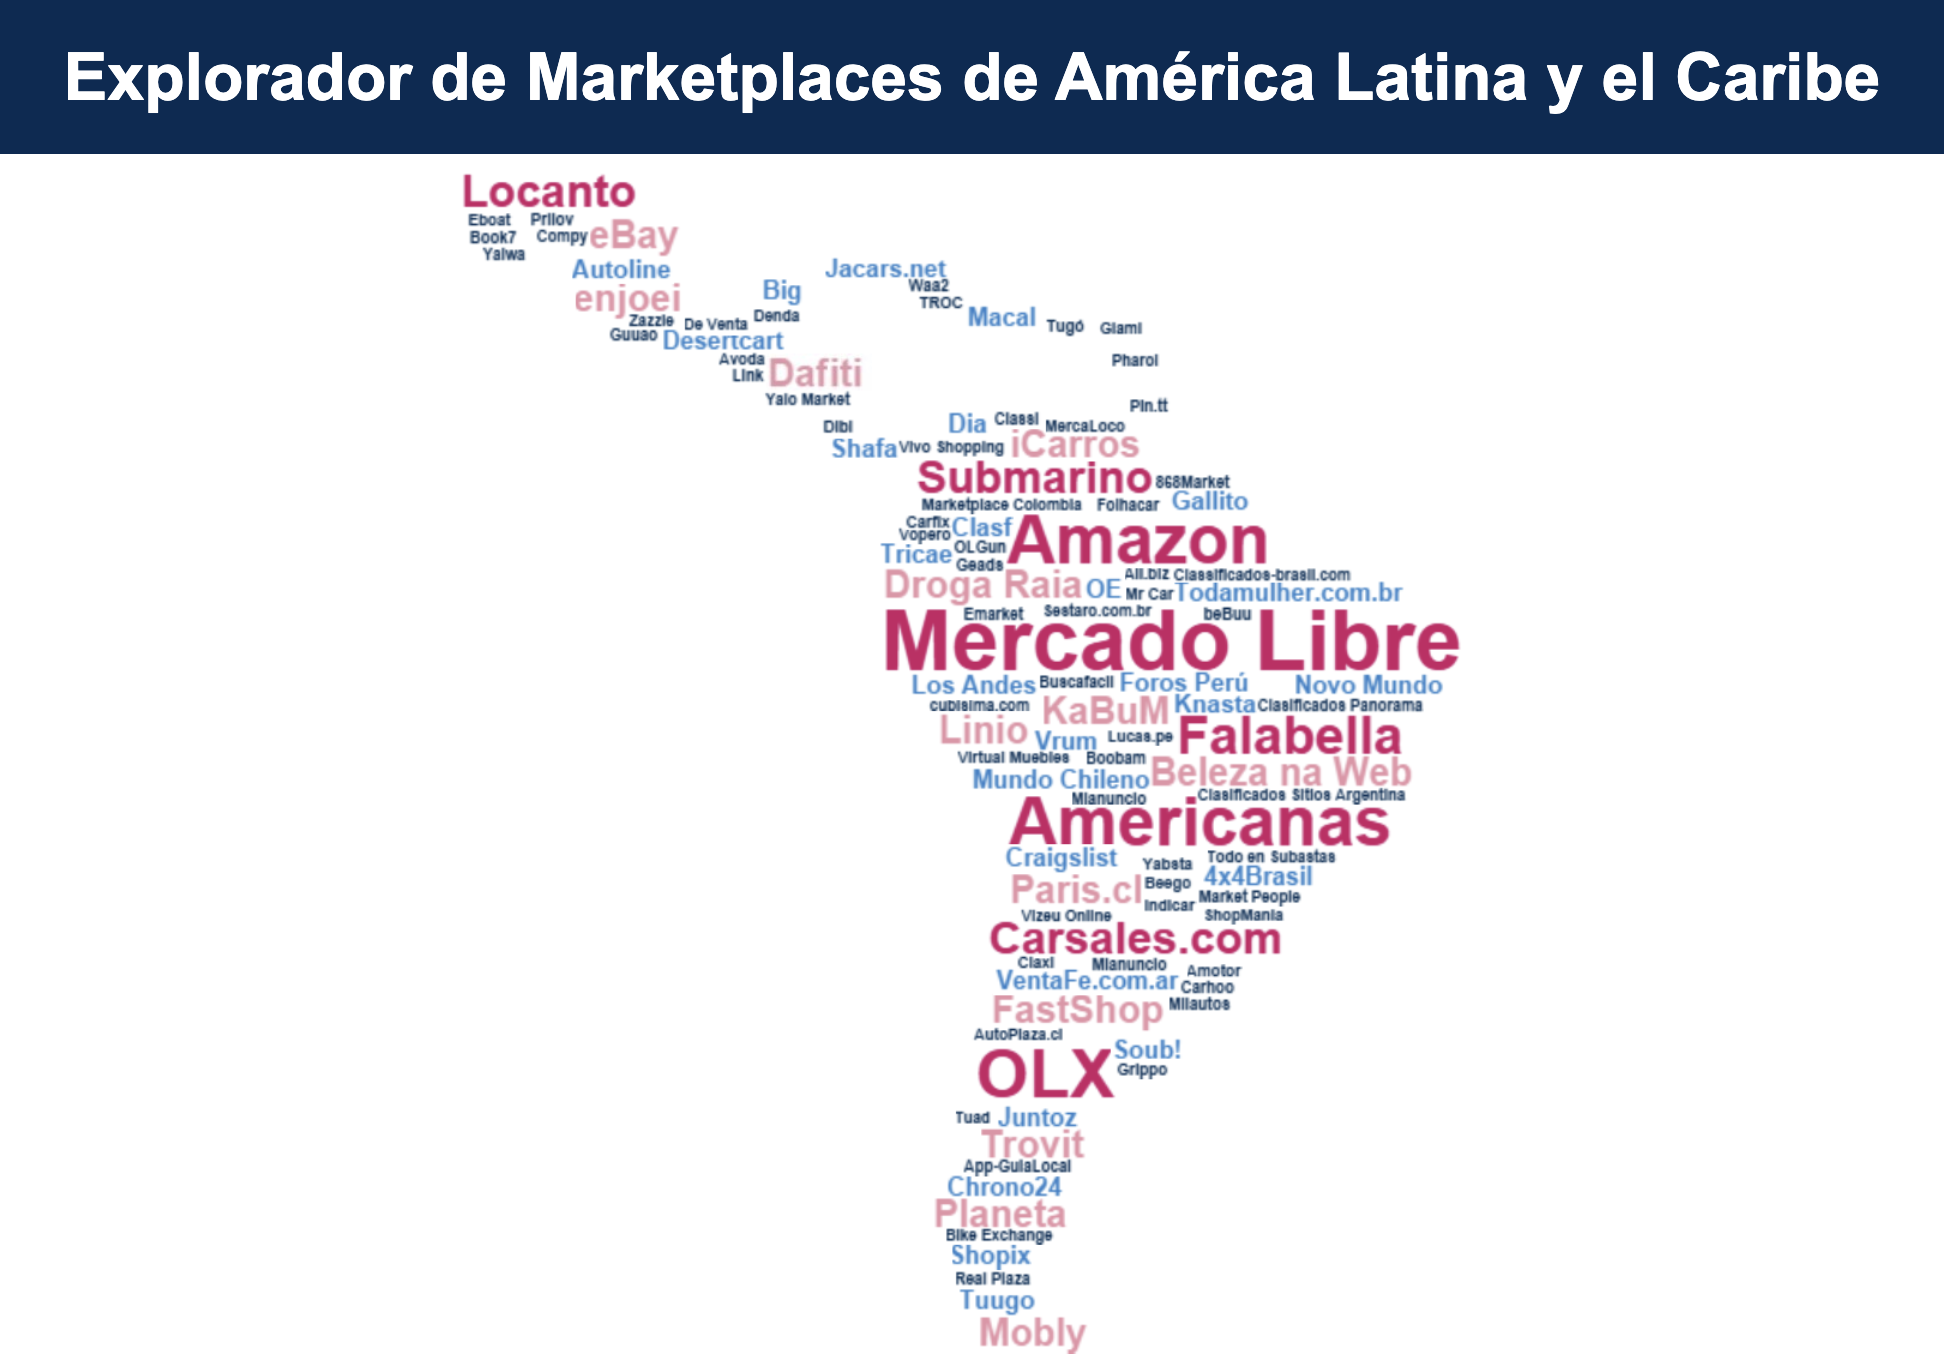 El Marketplace Explorer de América Latina y el Caribe